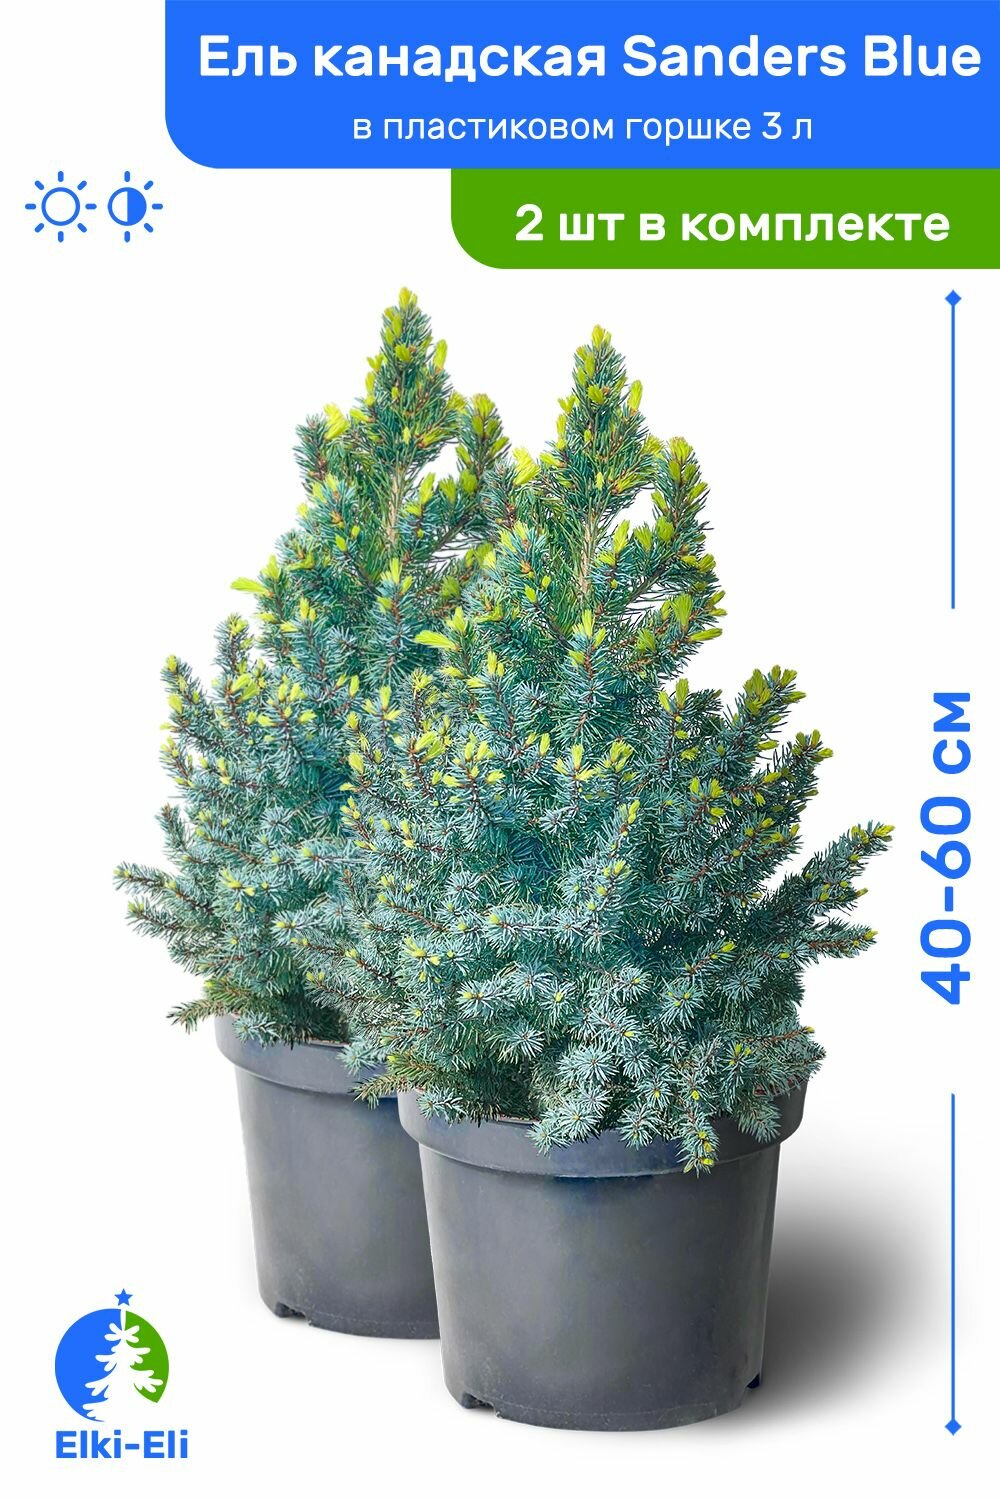 Ель канадская Sanders Blue (Сандерс Блю) 40-60 см в пластиковом горшке 3 л, саженец, хвойное живое растение, комплект из 2 шт